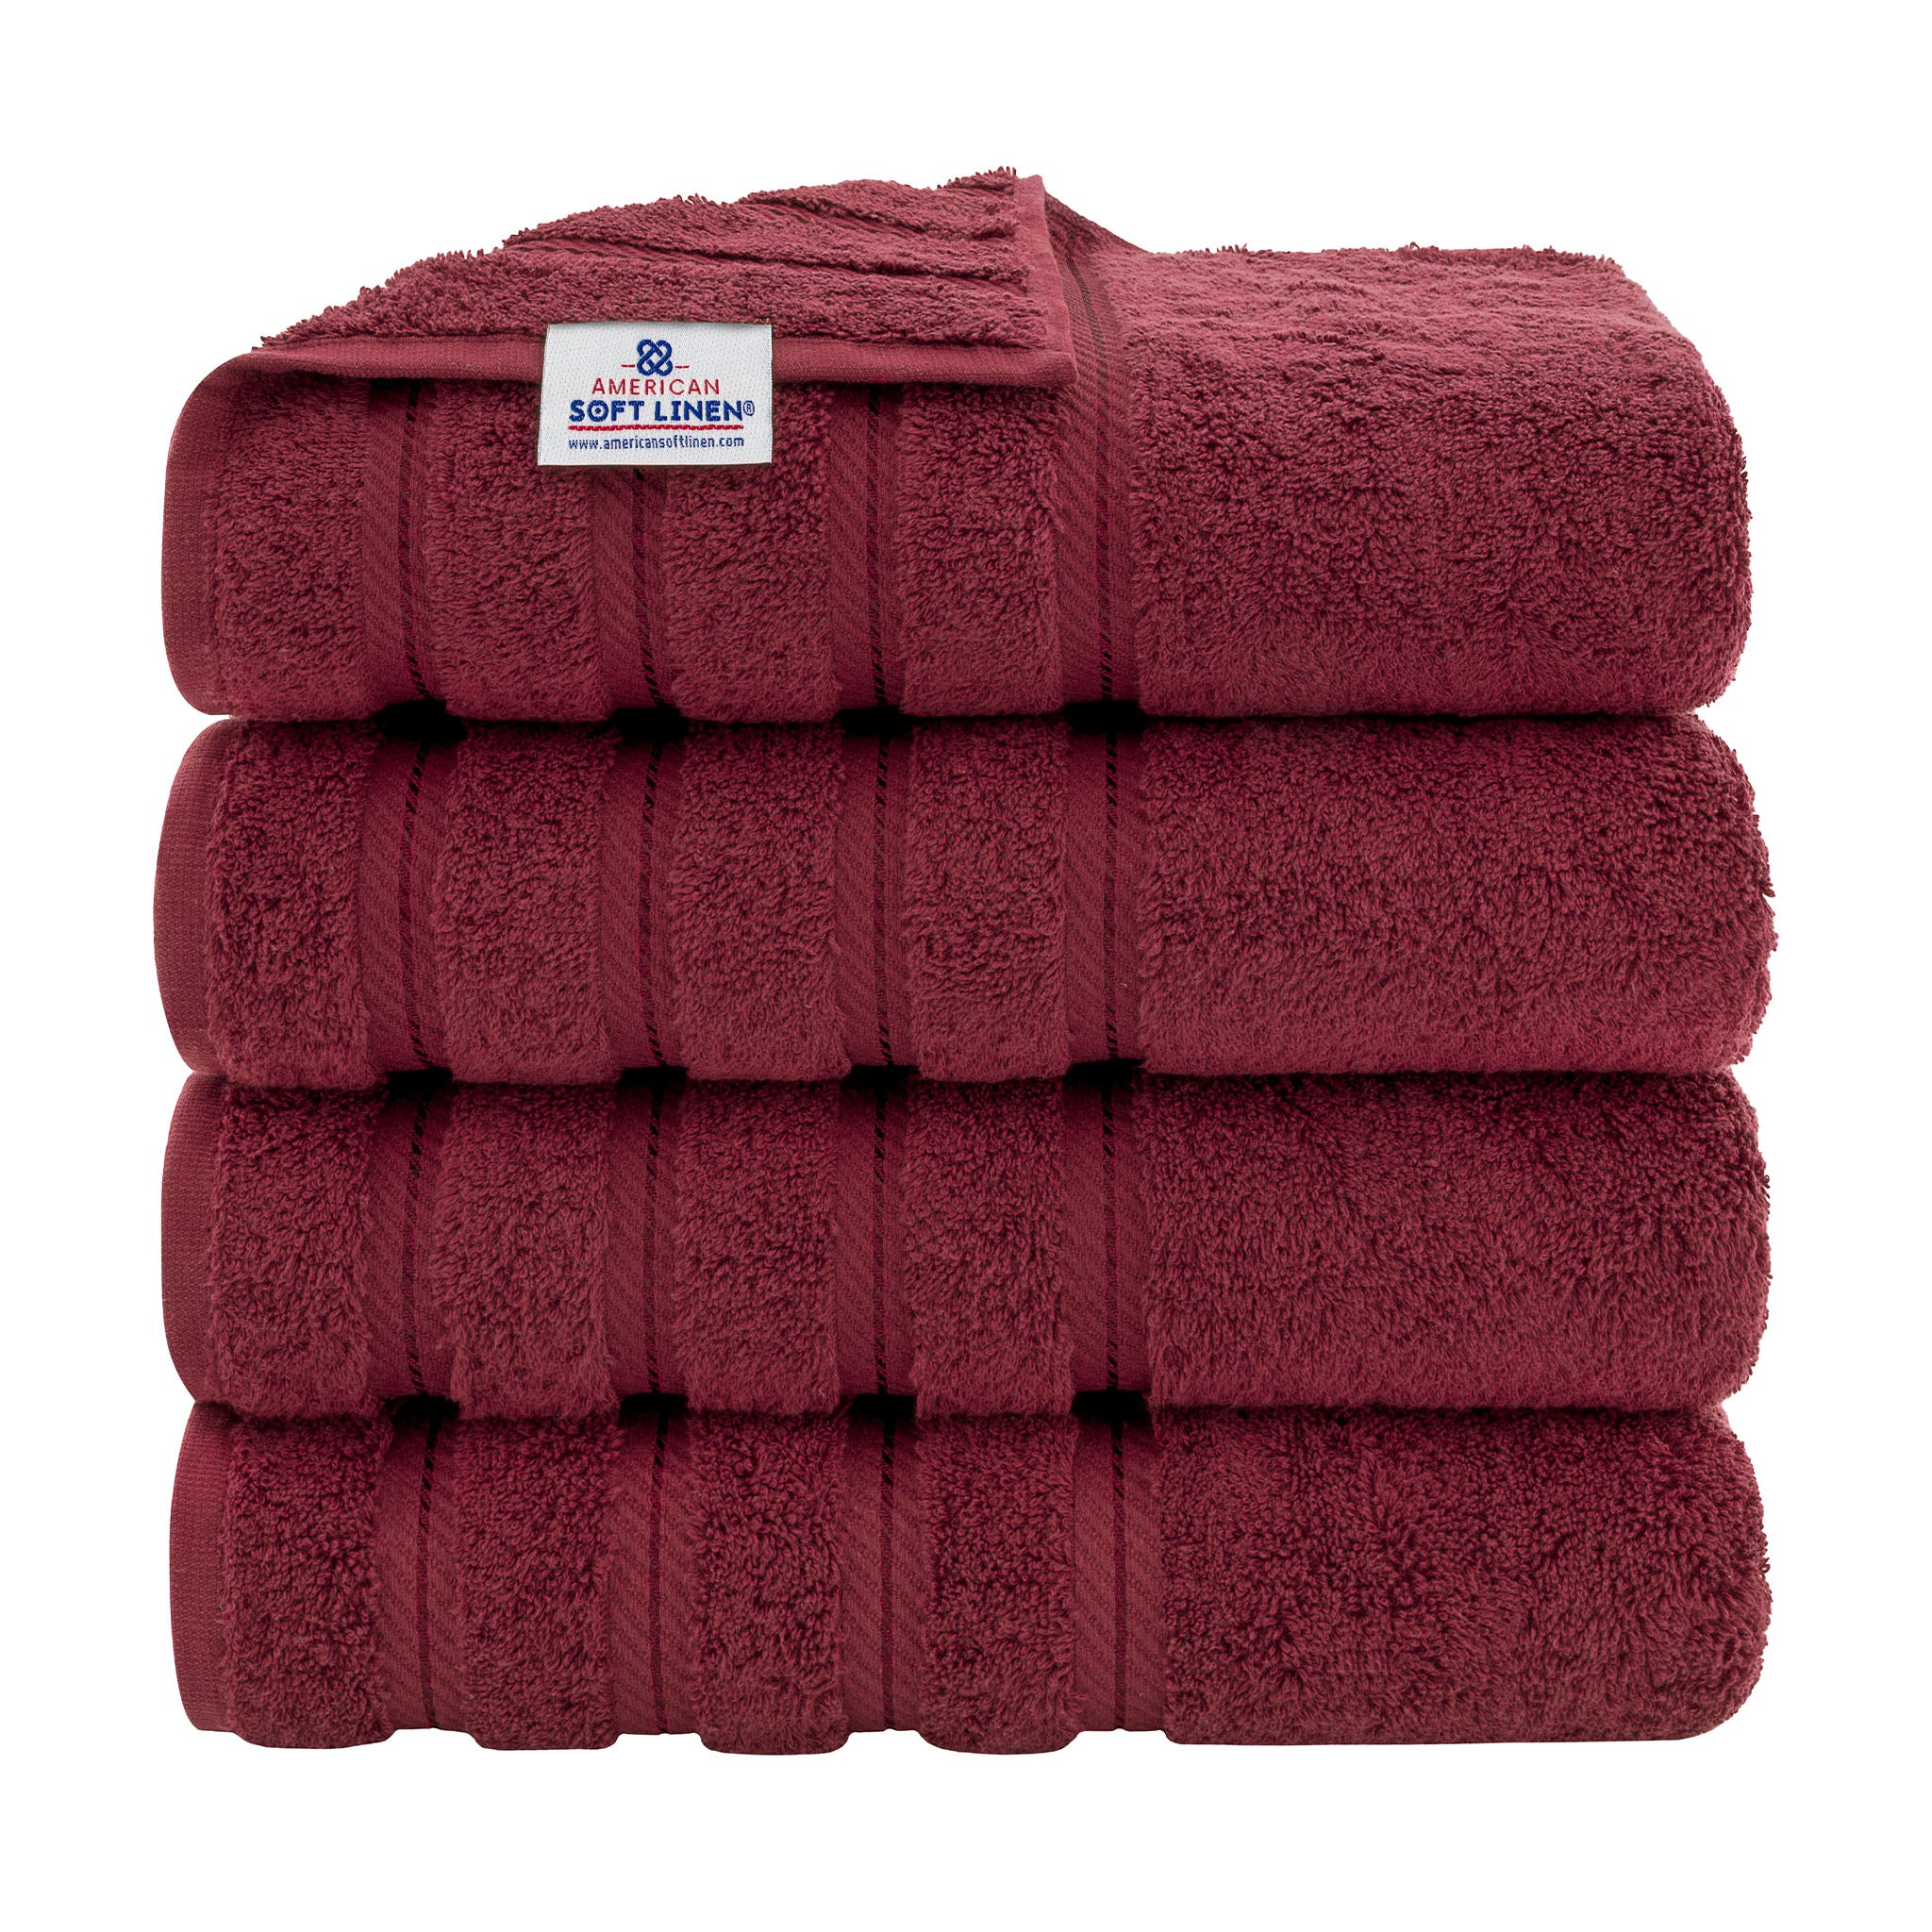 American Soft Linen 100% Turkish Cotton 4 Pack Bath Towel Set Wholesale bordeaux-red-1